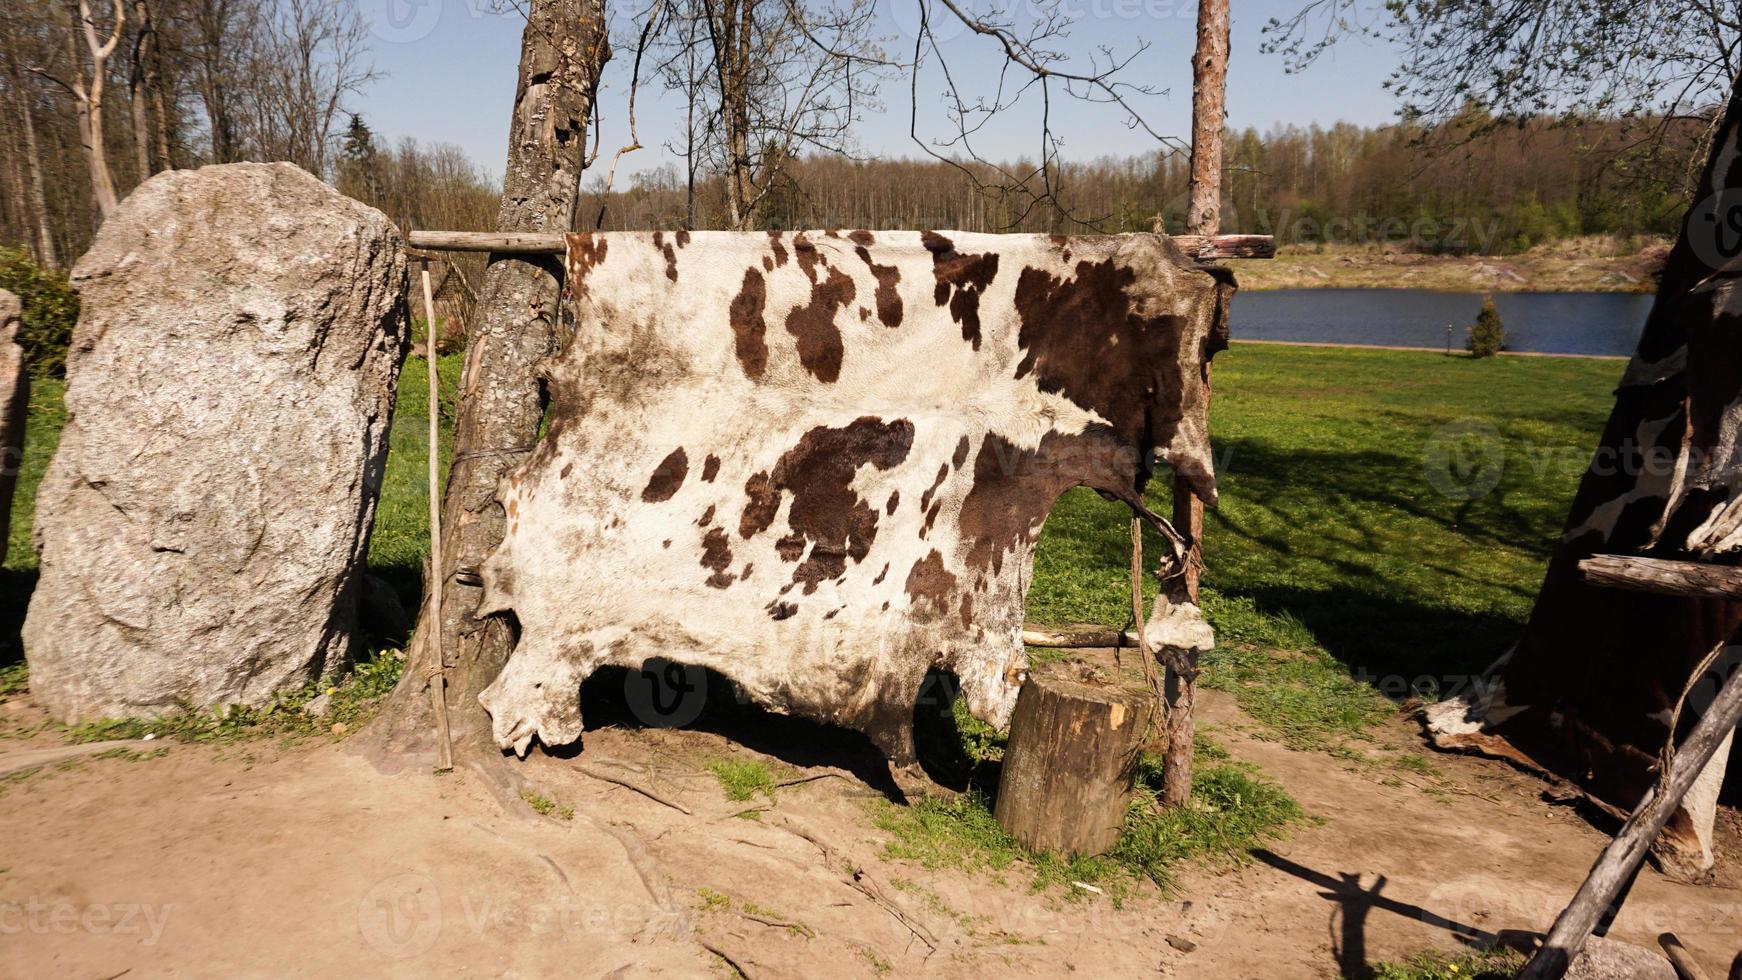 een oud vikingkamp. de koeienhuid wordt in de zon gedroogd. foto